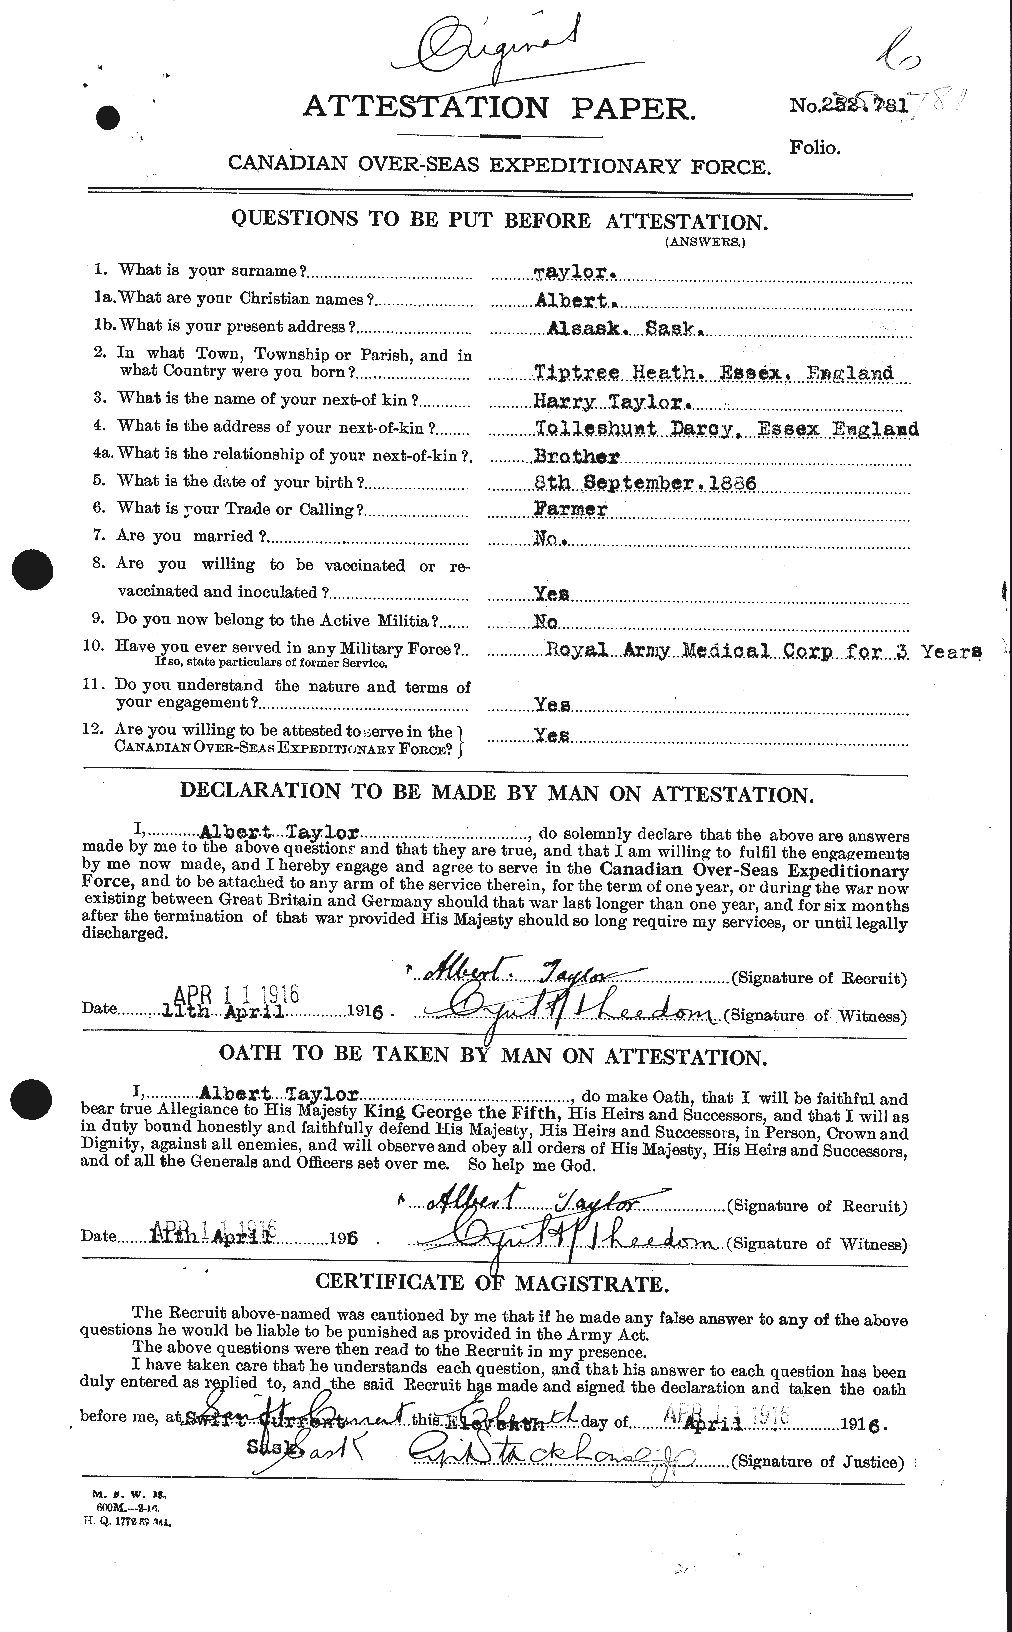 Dossiers du Personnel de la Première Guerre mondiale - CEC 626092a